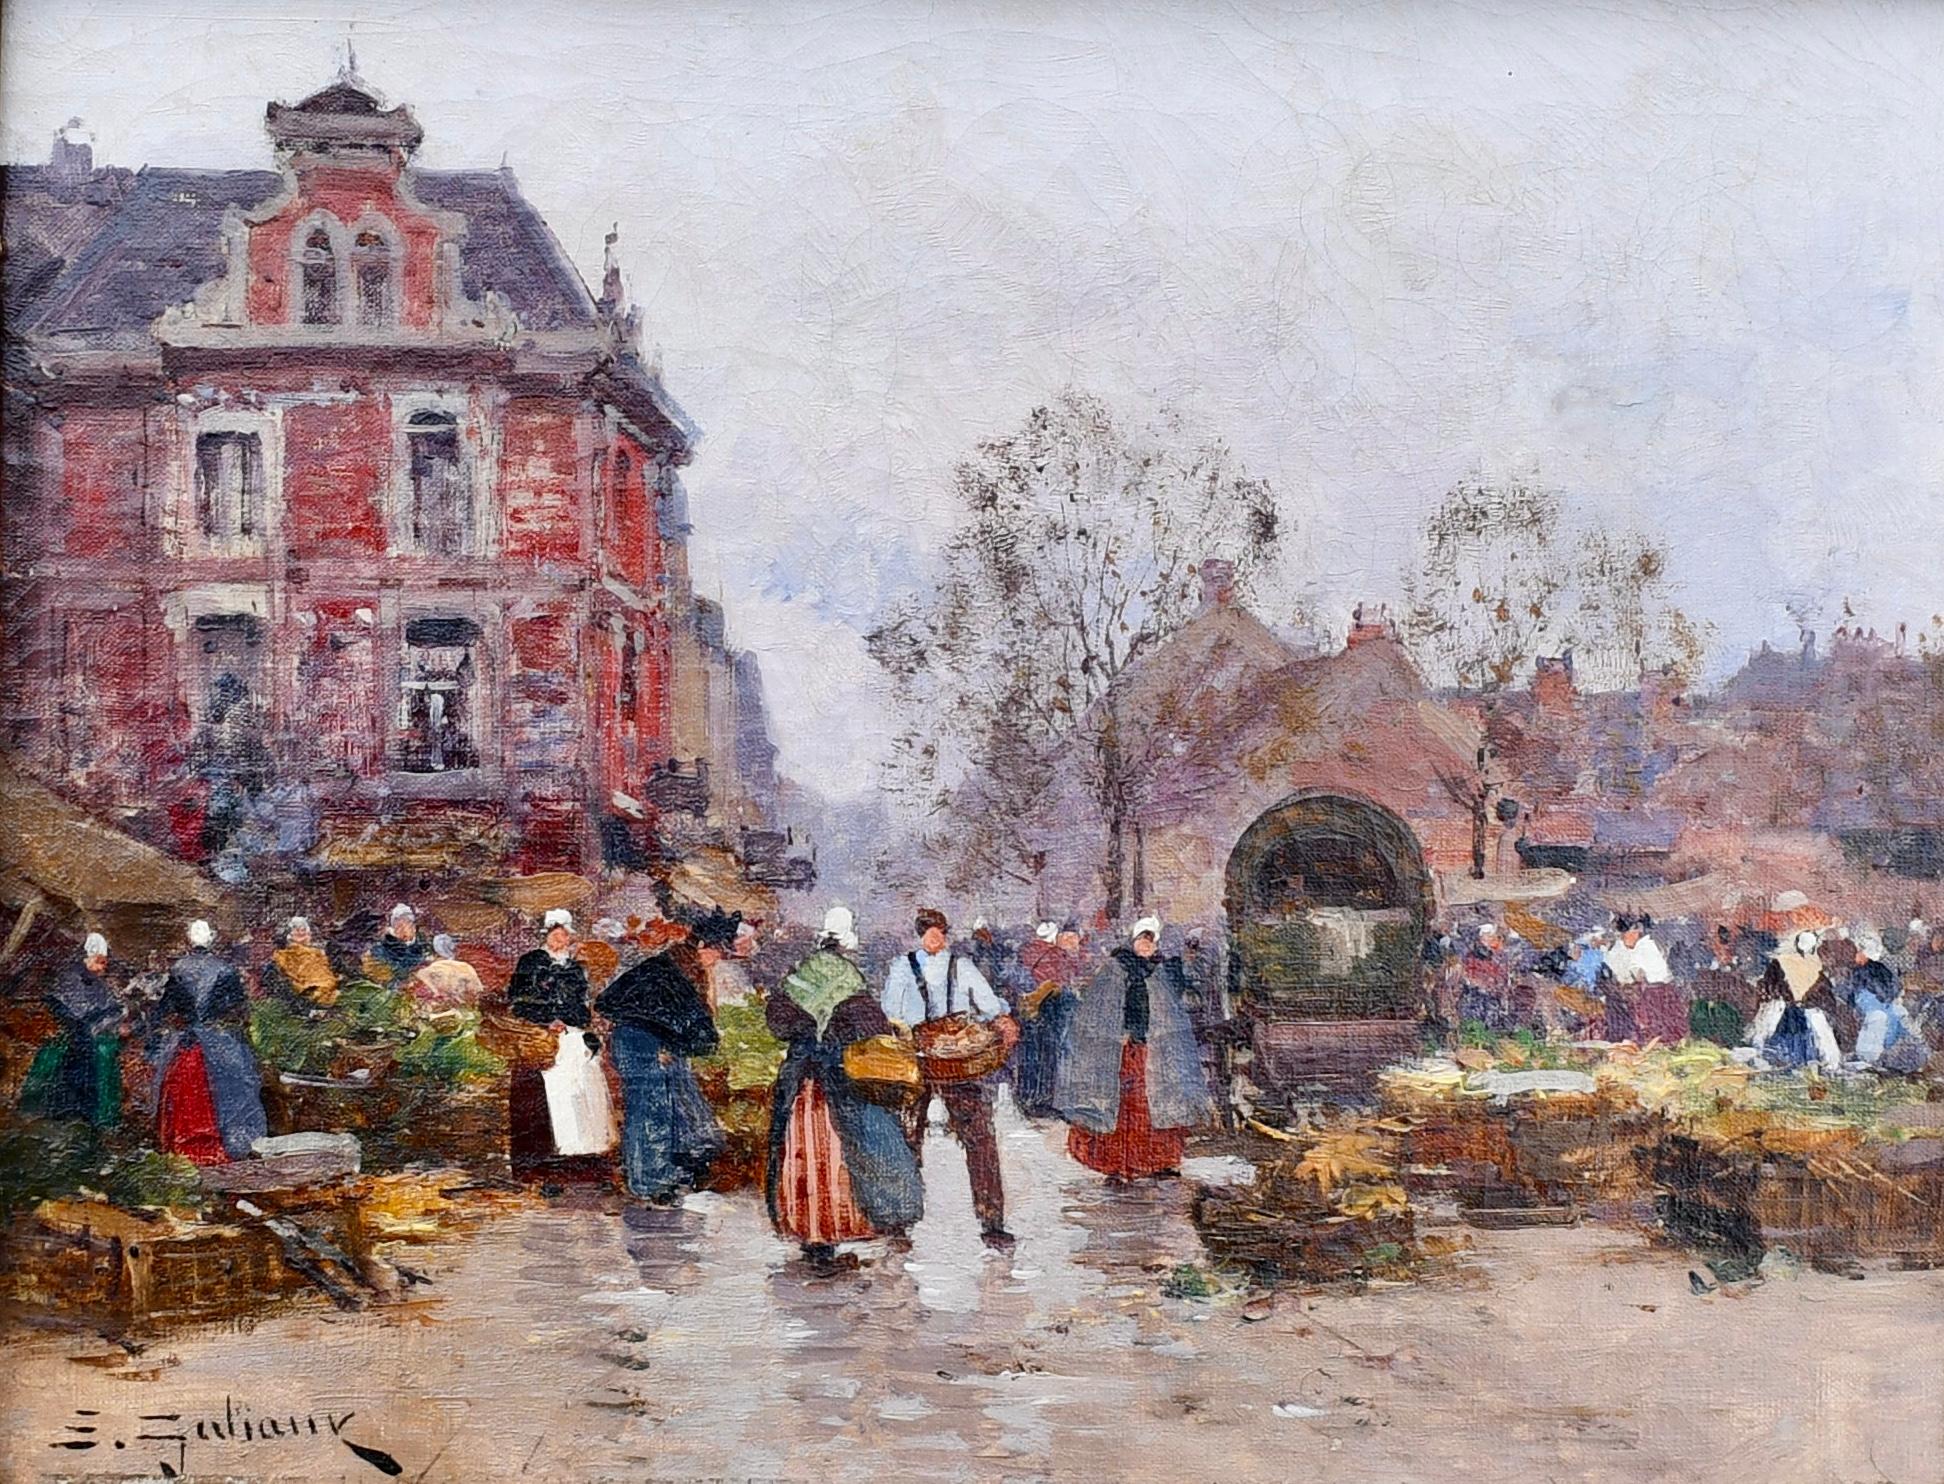 Market Day - Art Nouveau Painting by Eugene Galien-Laloue